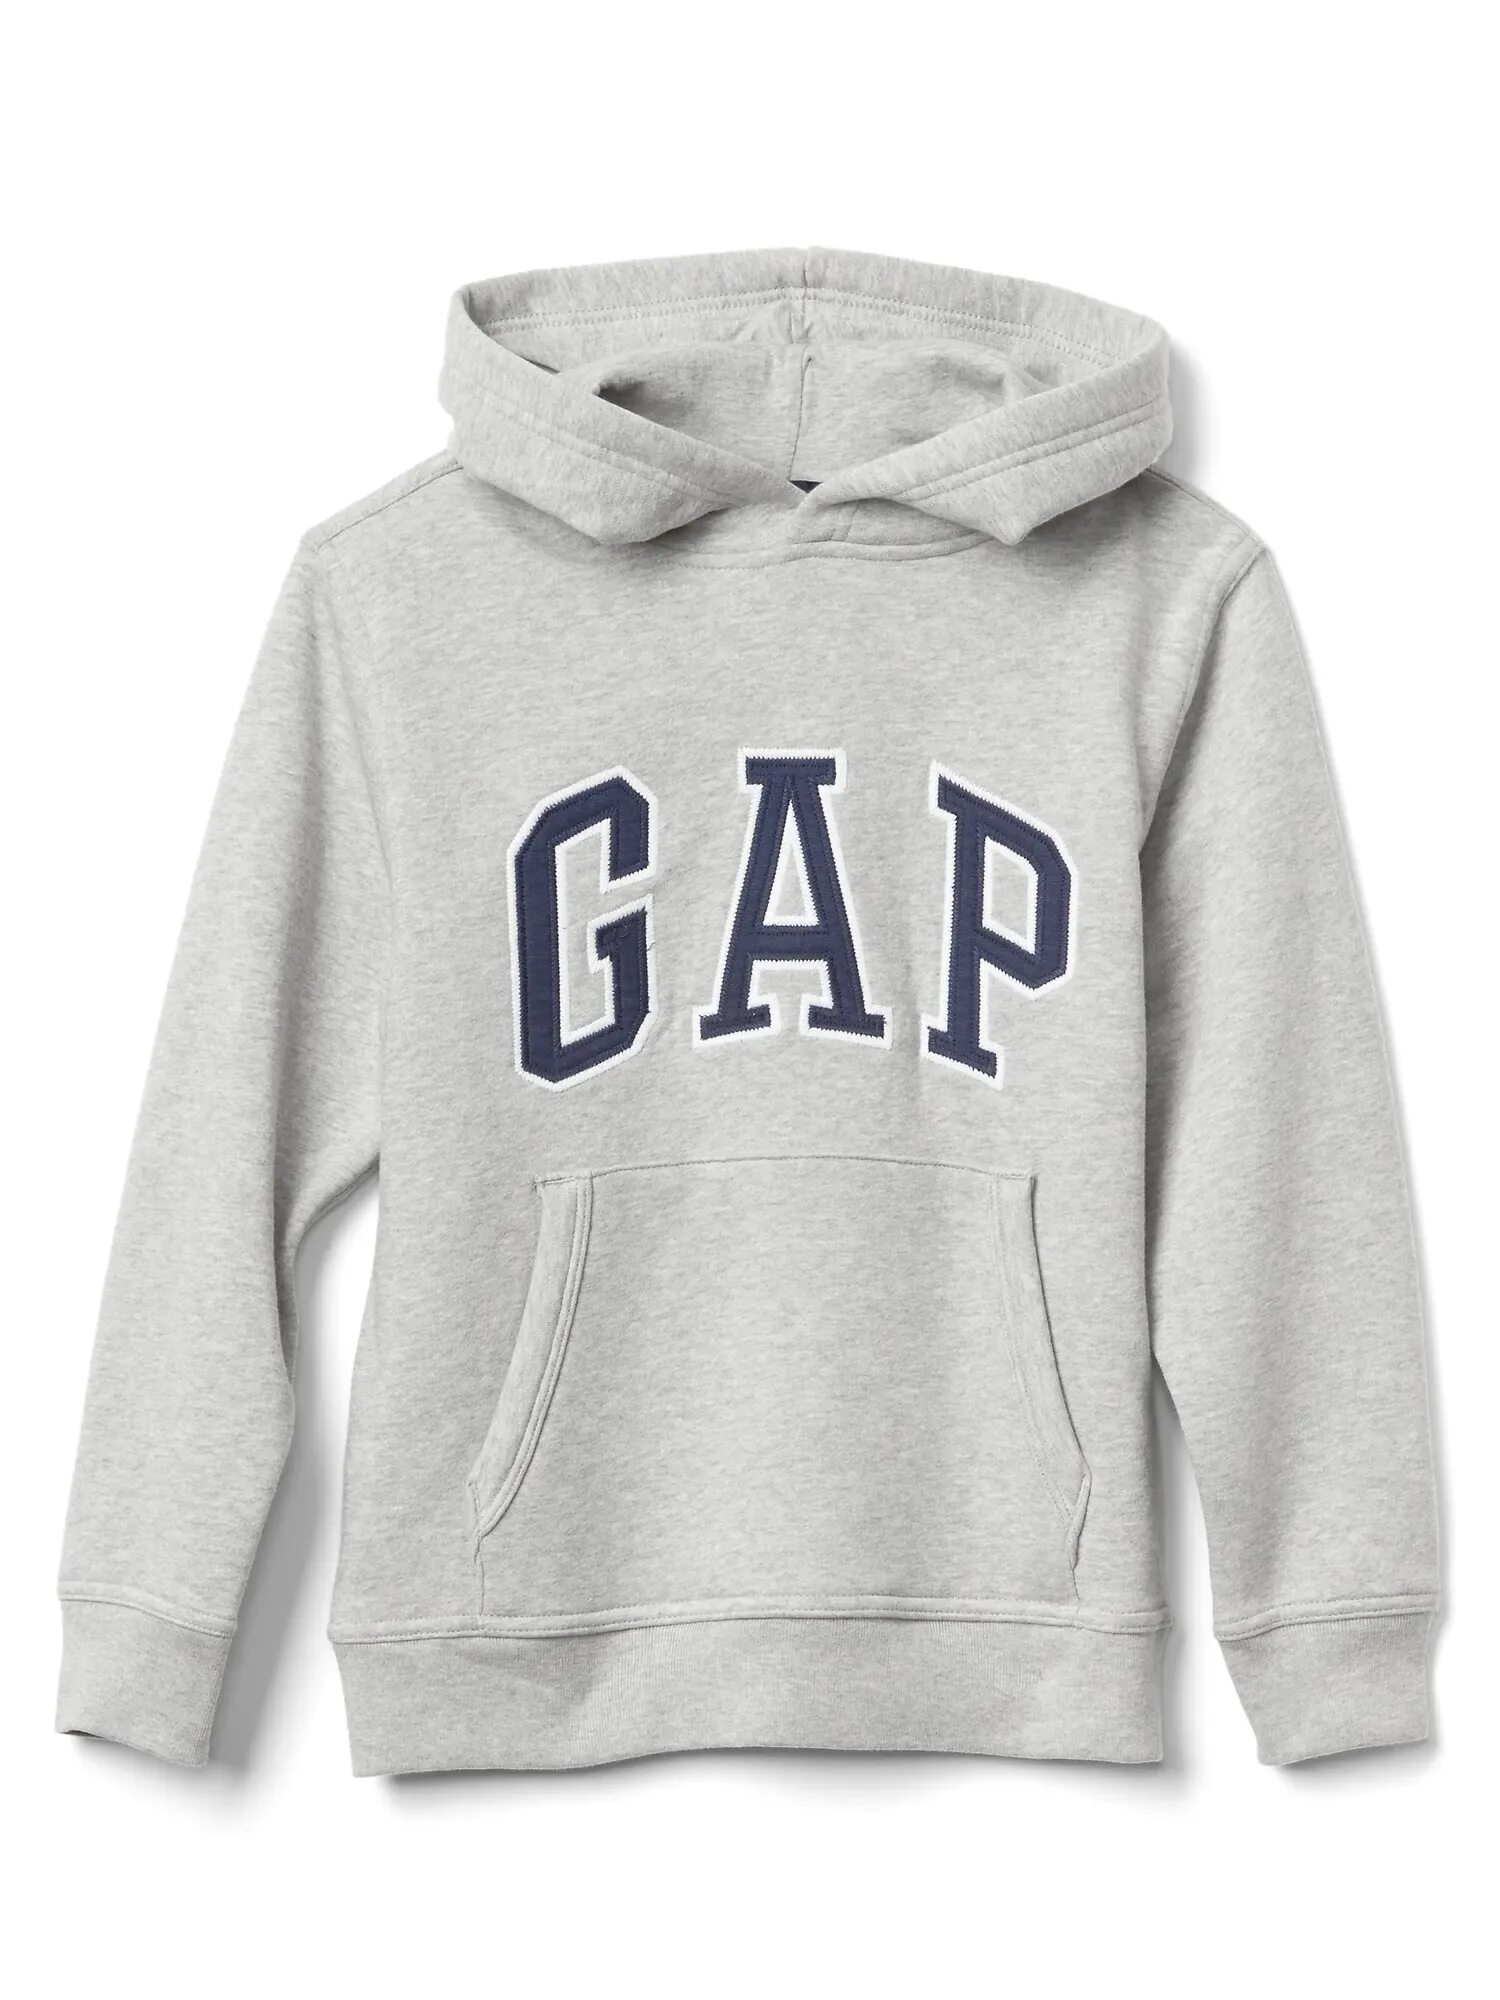 Gap компания. Gap. Gap бренд. Гэп одежда. Худи для мальчиков.